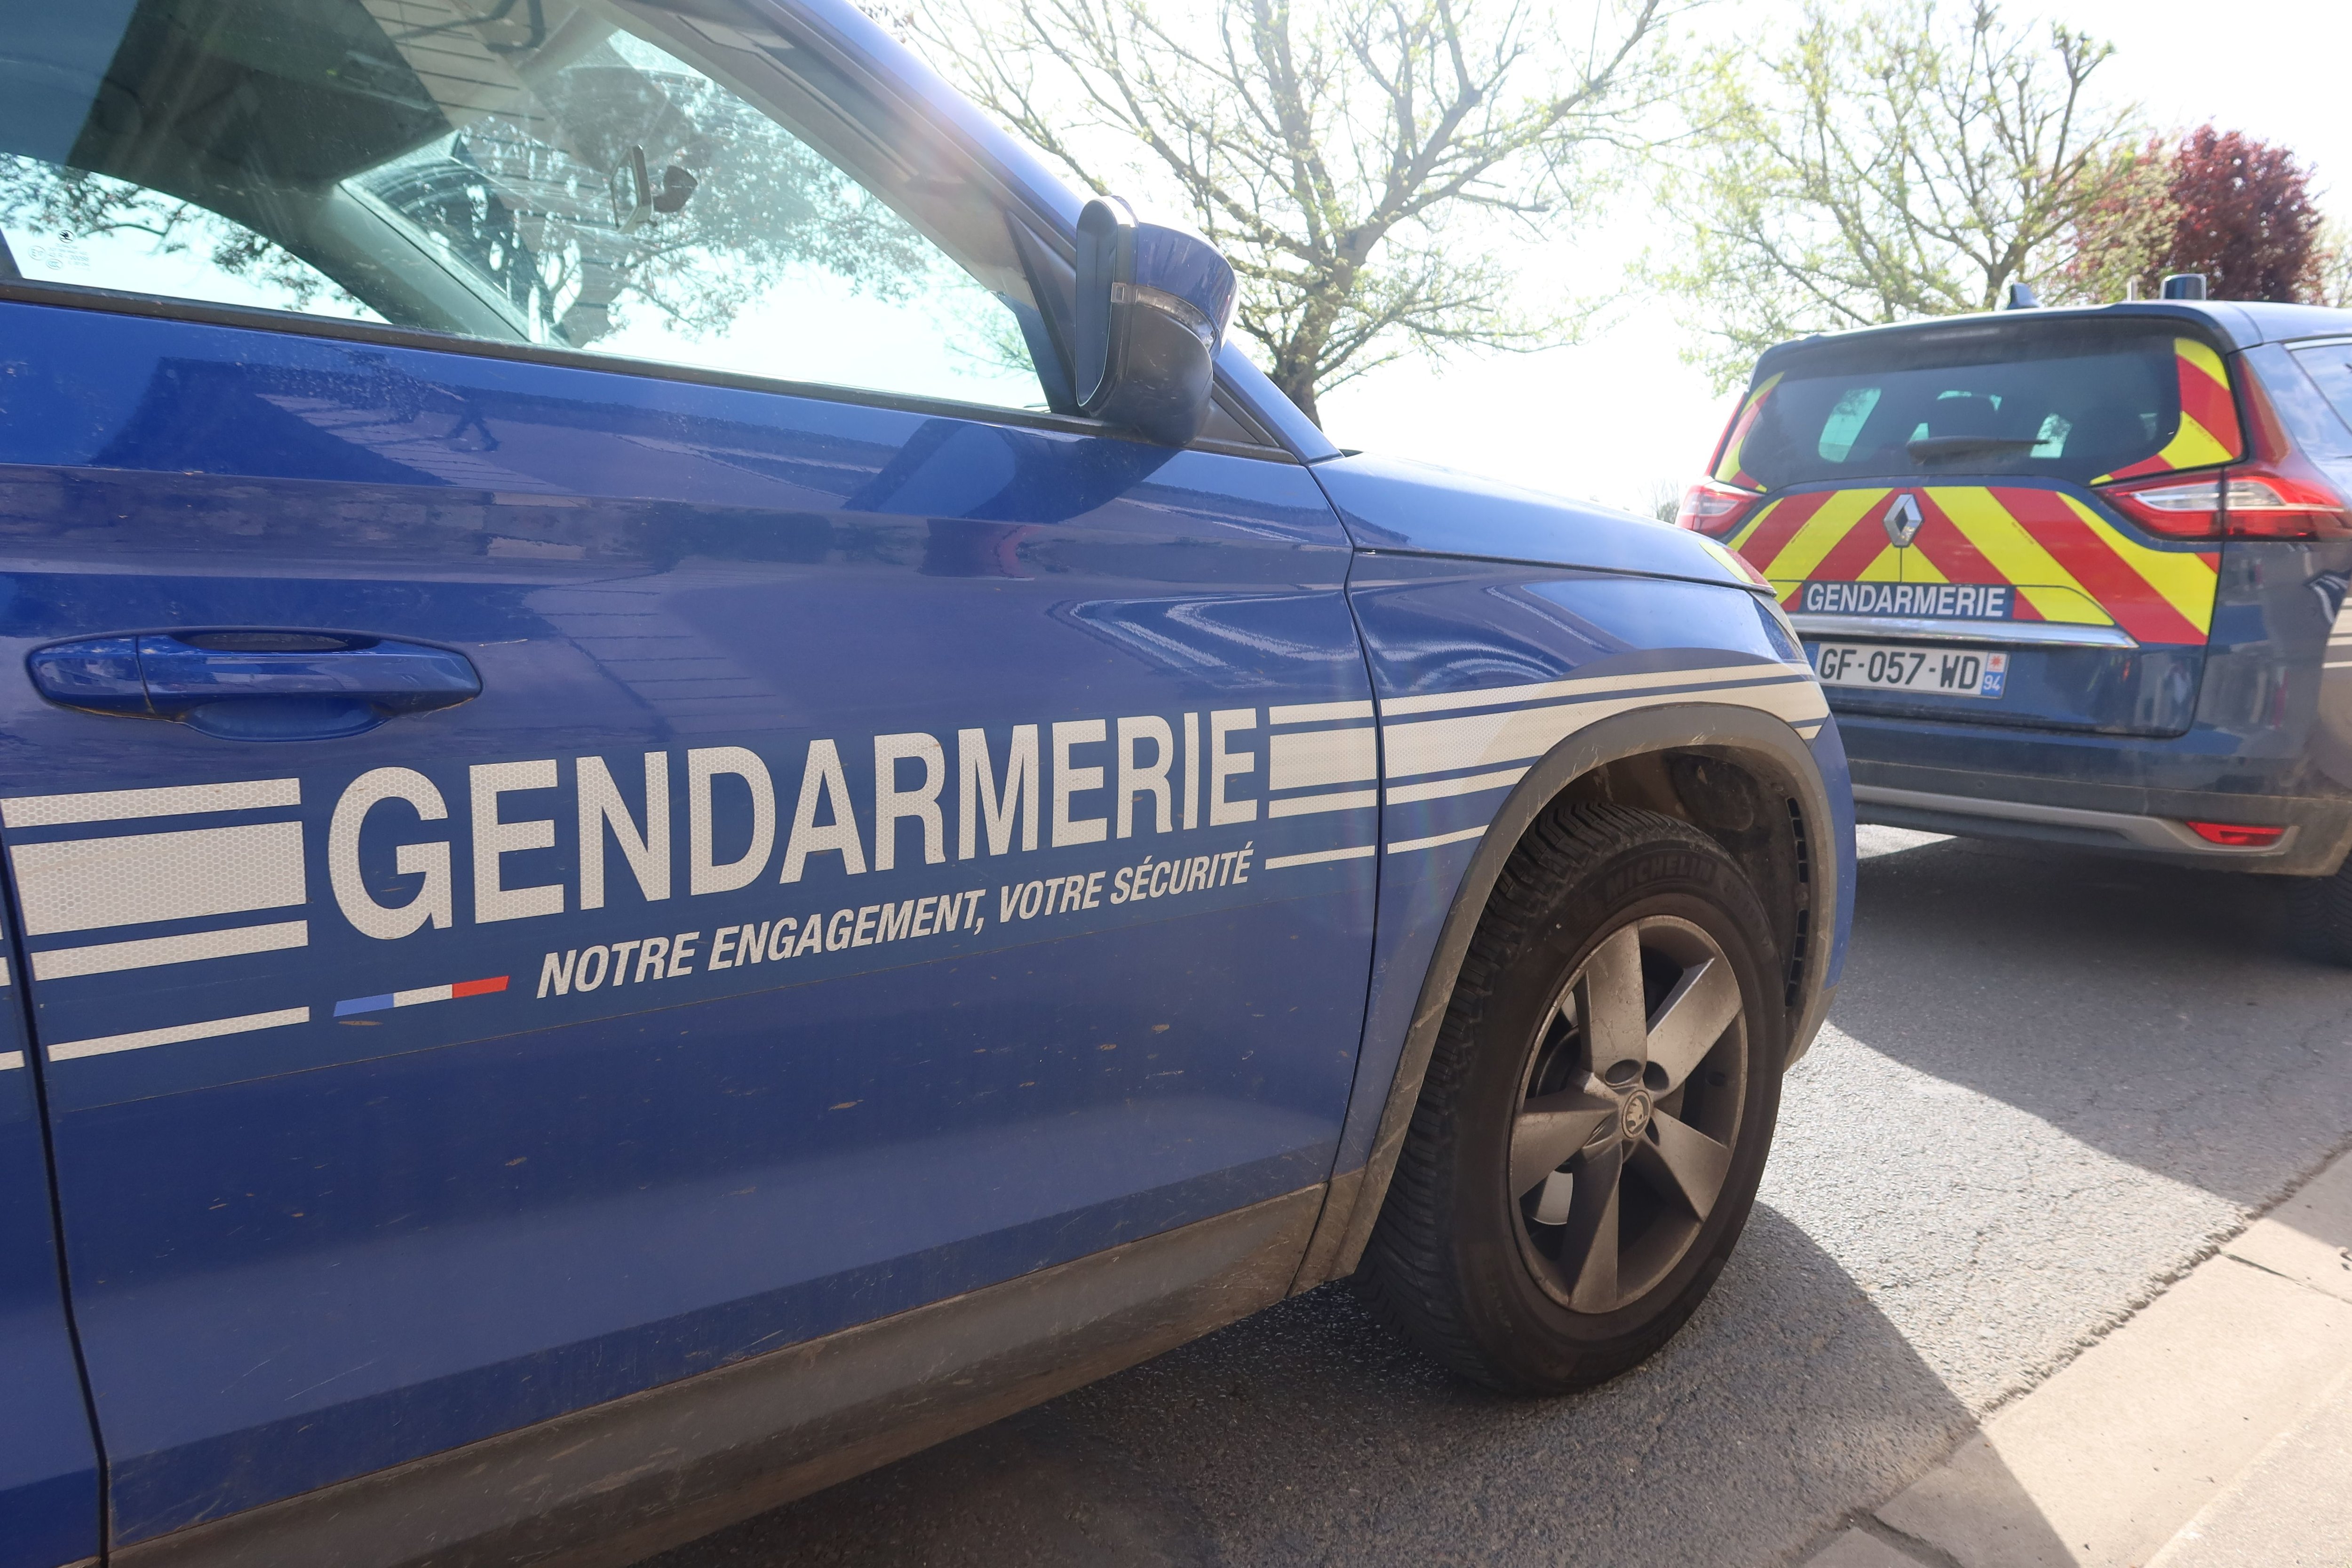 Le forcené armé d'une carabine a été maîtrisé en douceur par les gendarmes à Marest-sur-Matz. Illustration.